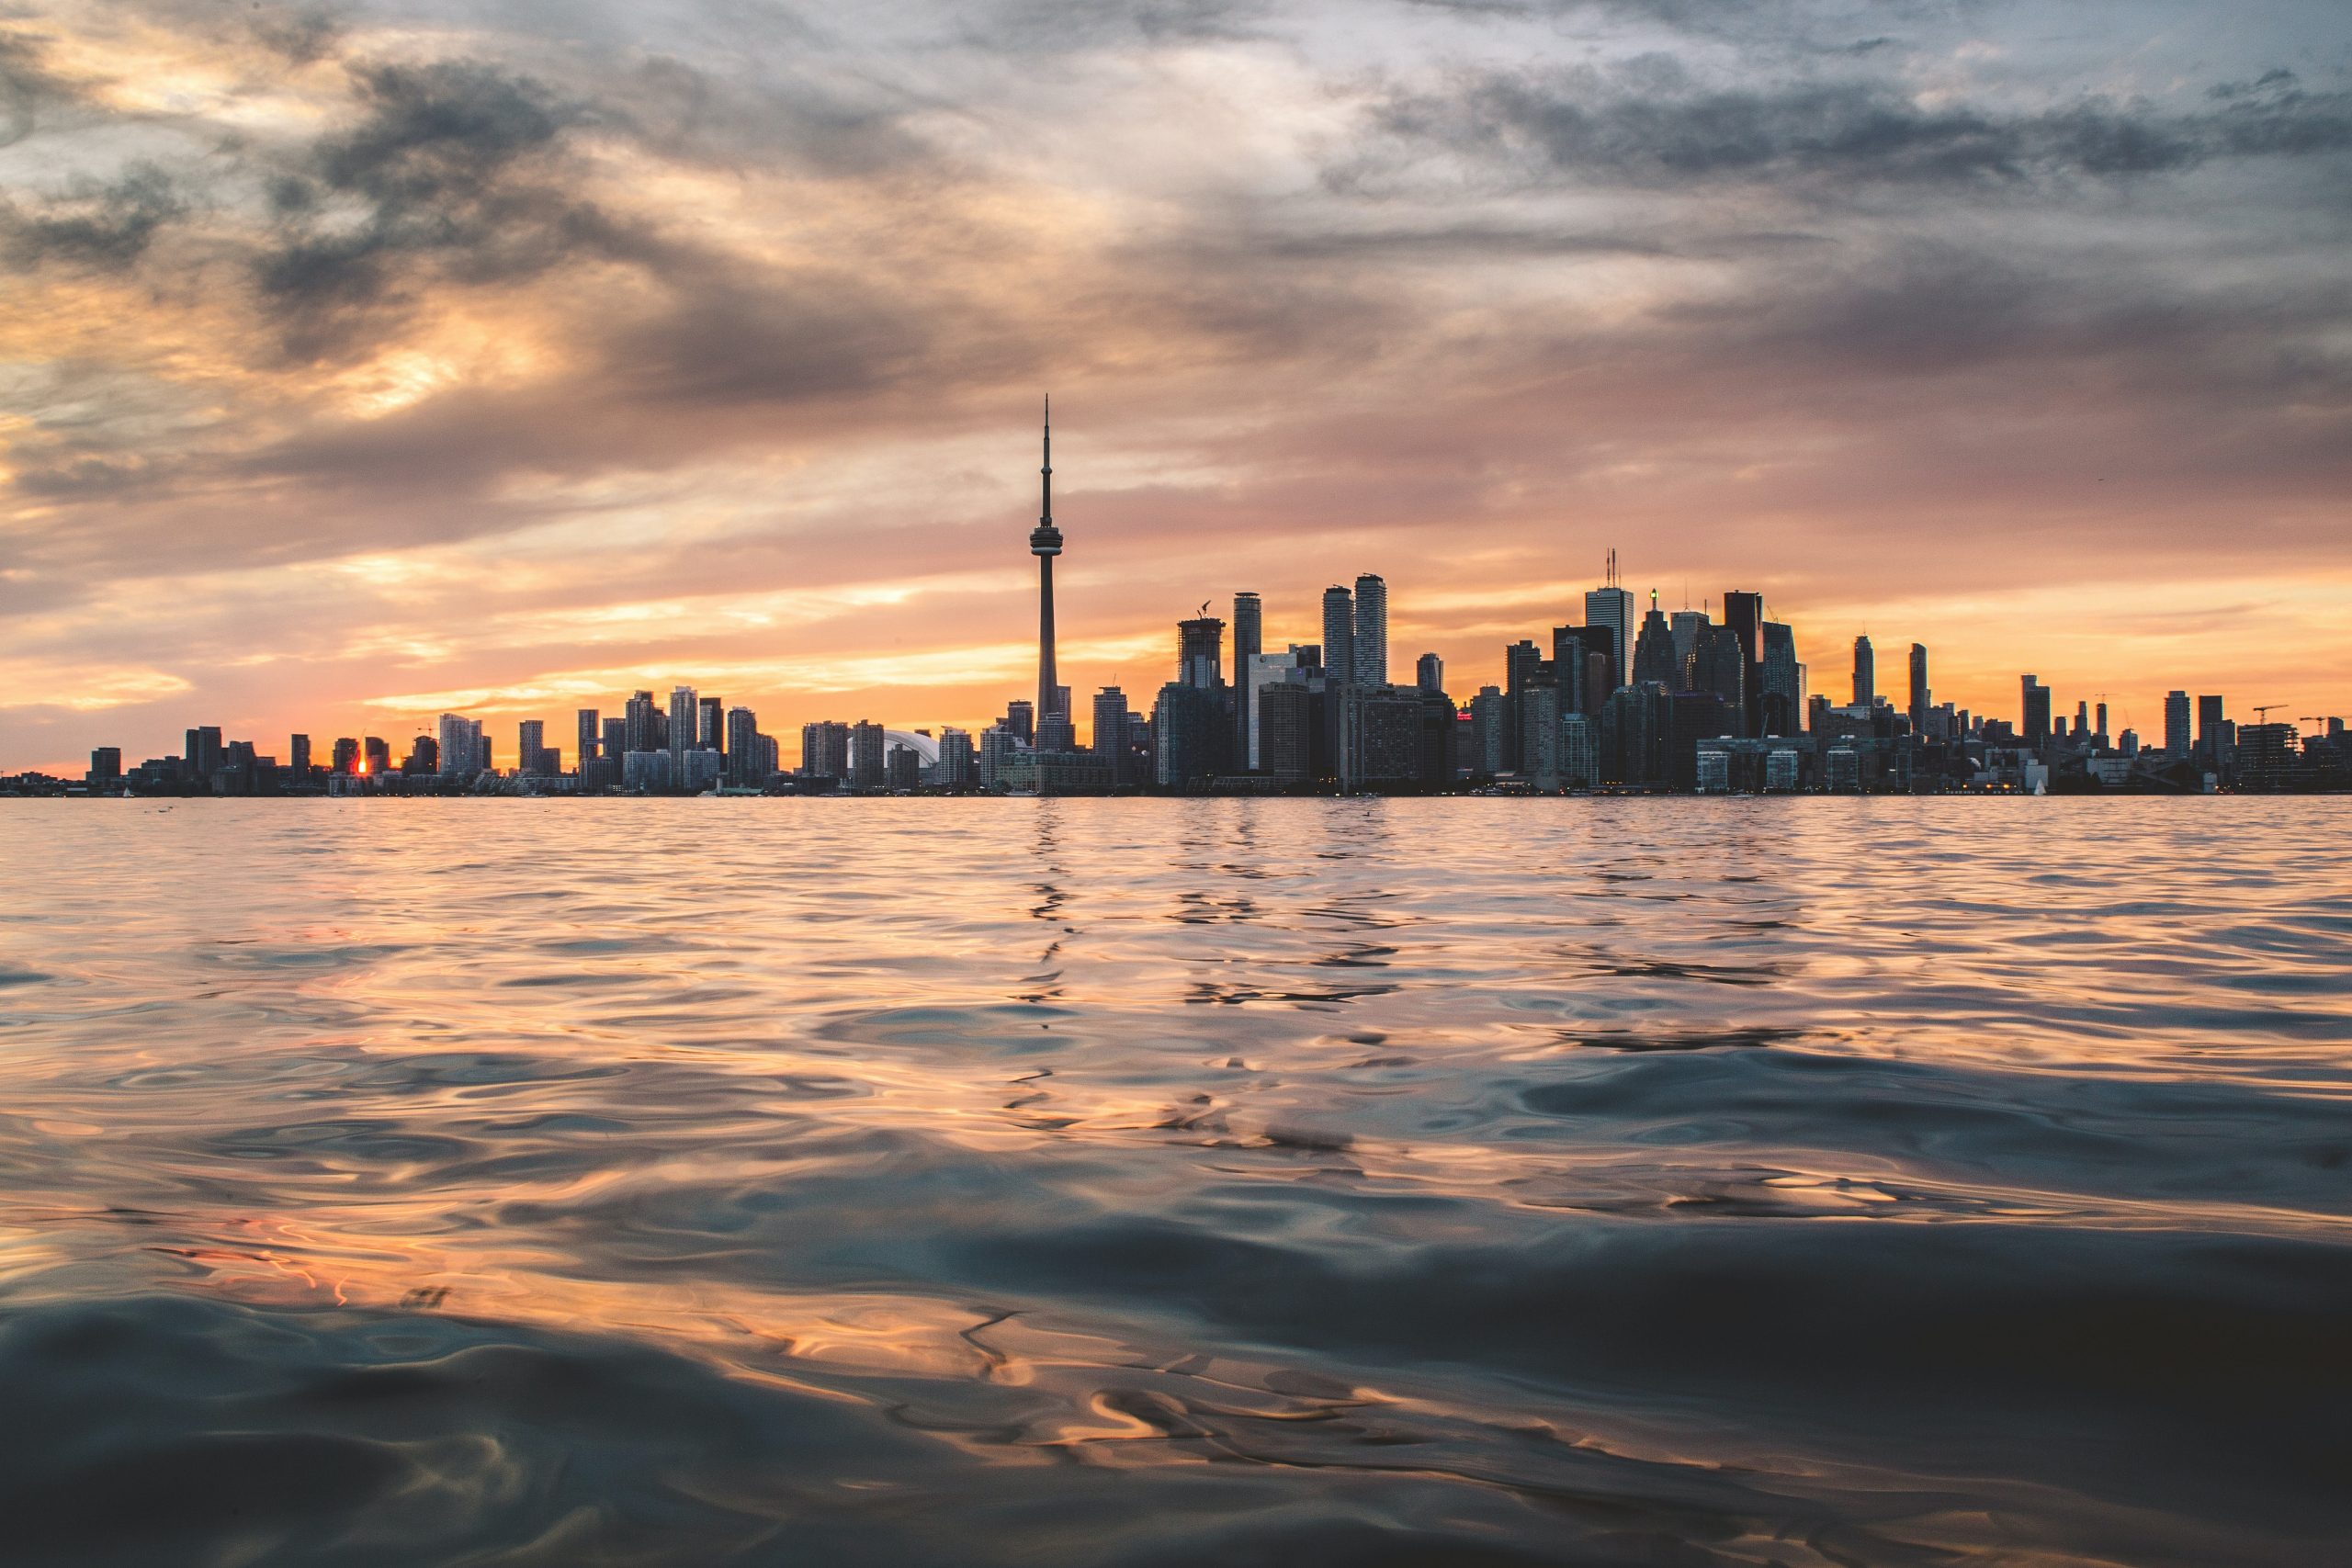 Canada’s Zero Plastic Waste 2030 Mandate